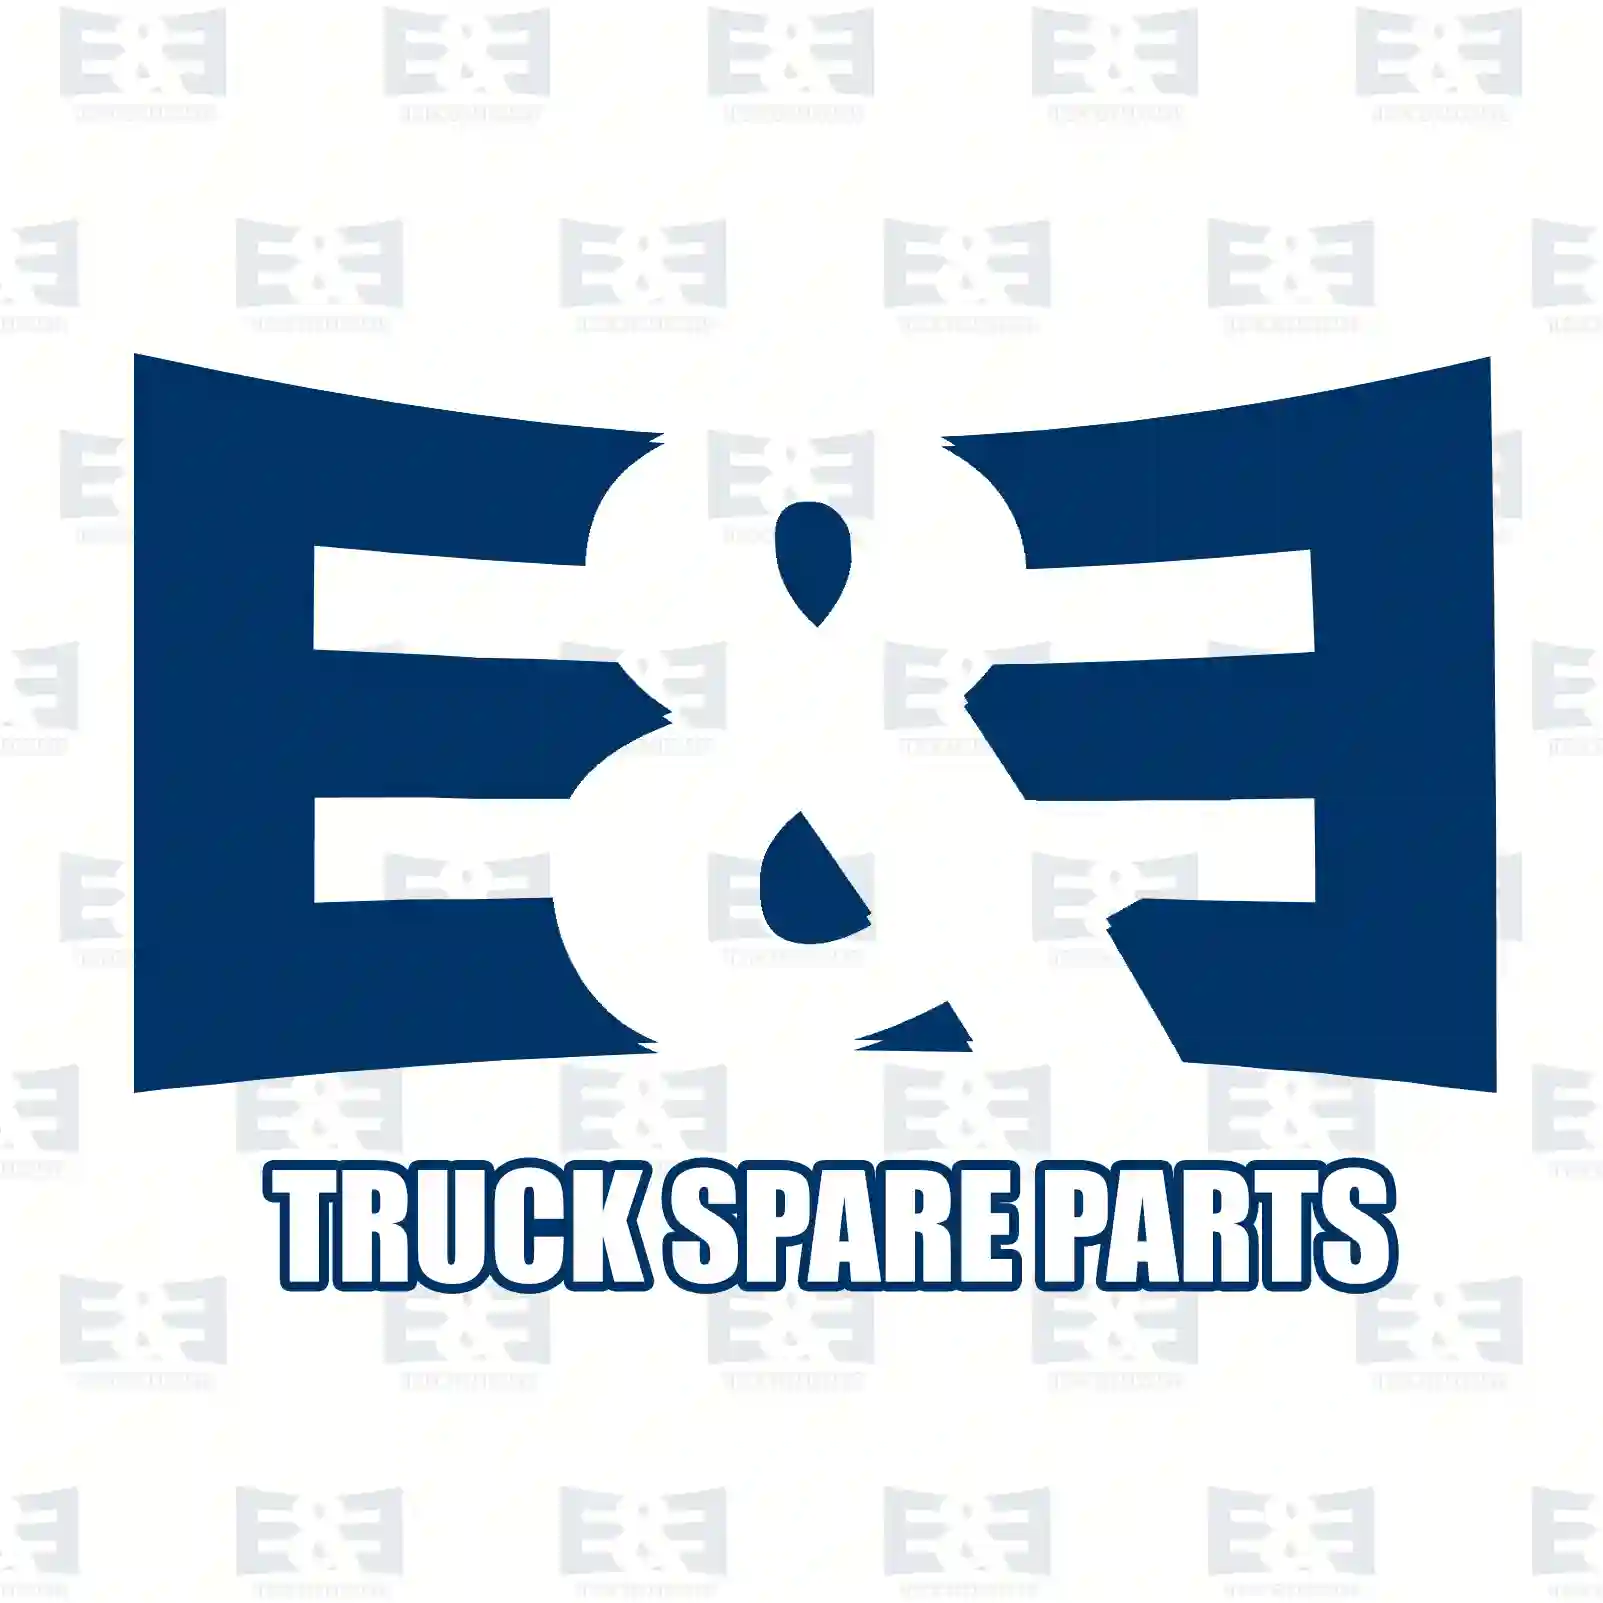 Adapter, 2E2275307, 85110122 ||  2E2275307 E&E Truck Spare Parts | Truck Spare Parts, Auotomotive Spare Parts Adapter, 2E2275307, 85110122 ||  2E2275307 E&E Truck Spare Parts | Truck Spare Parts, Auotomotive Spare Parts